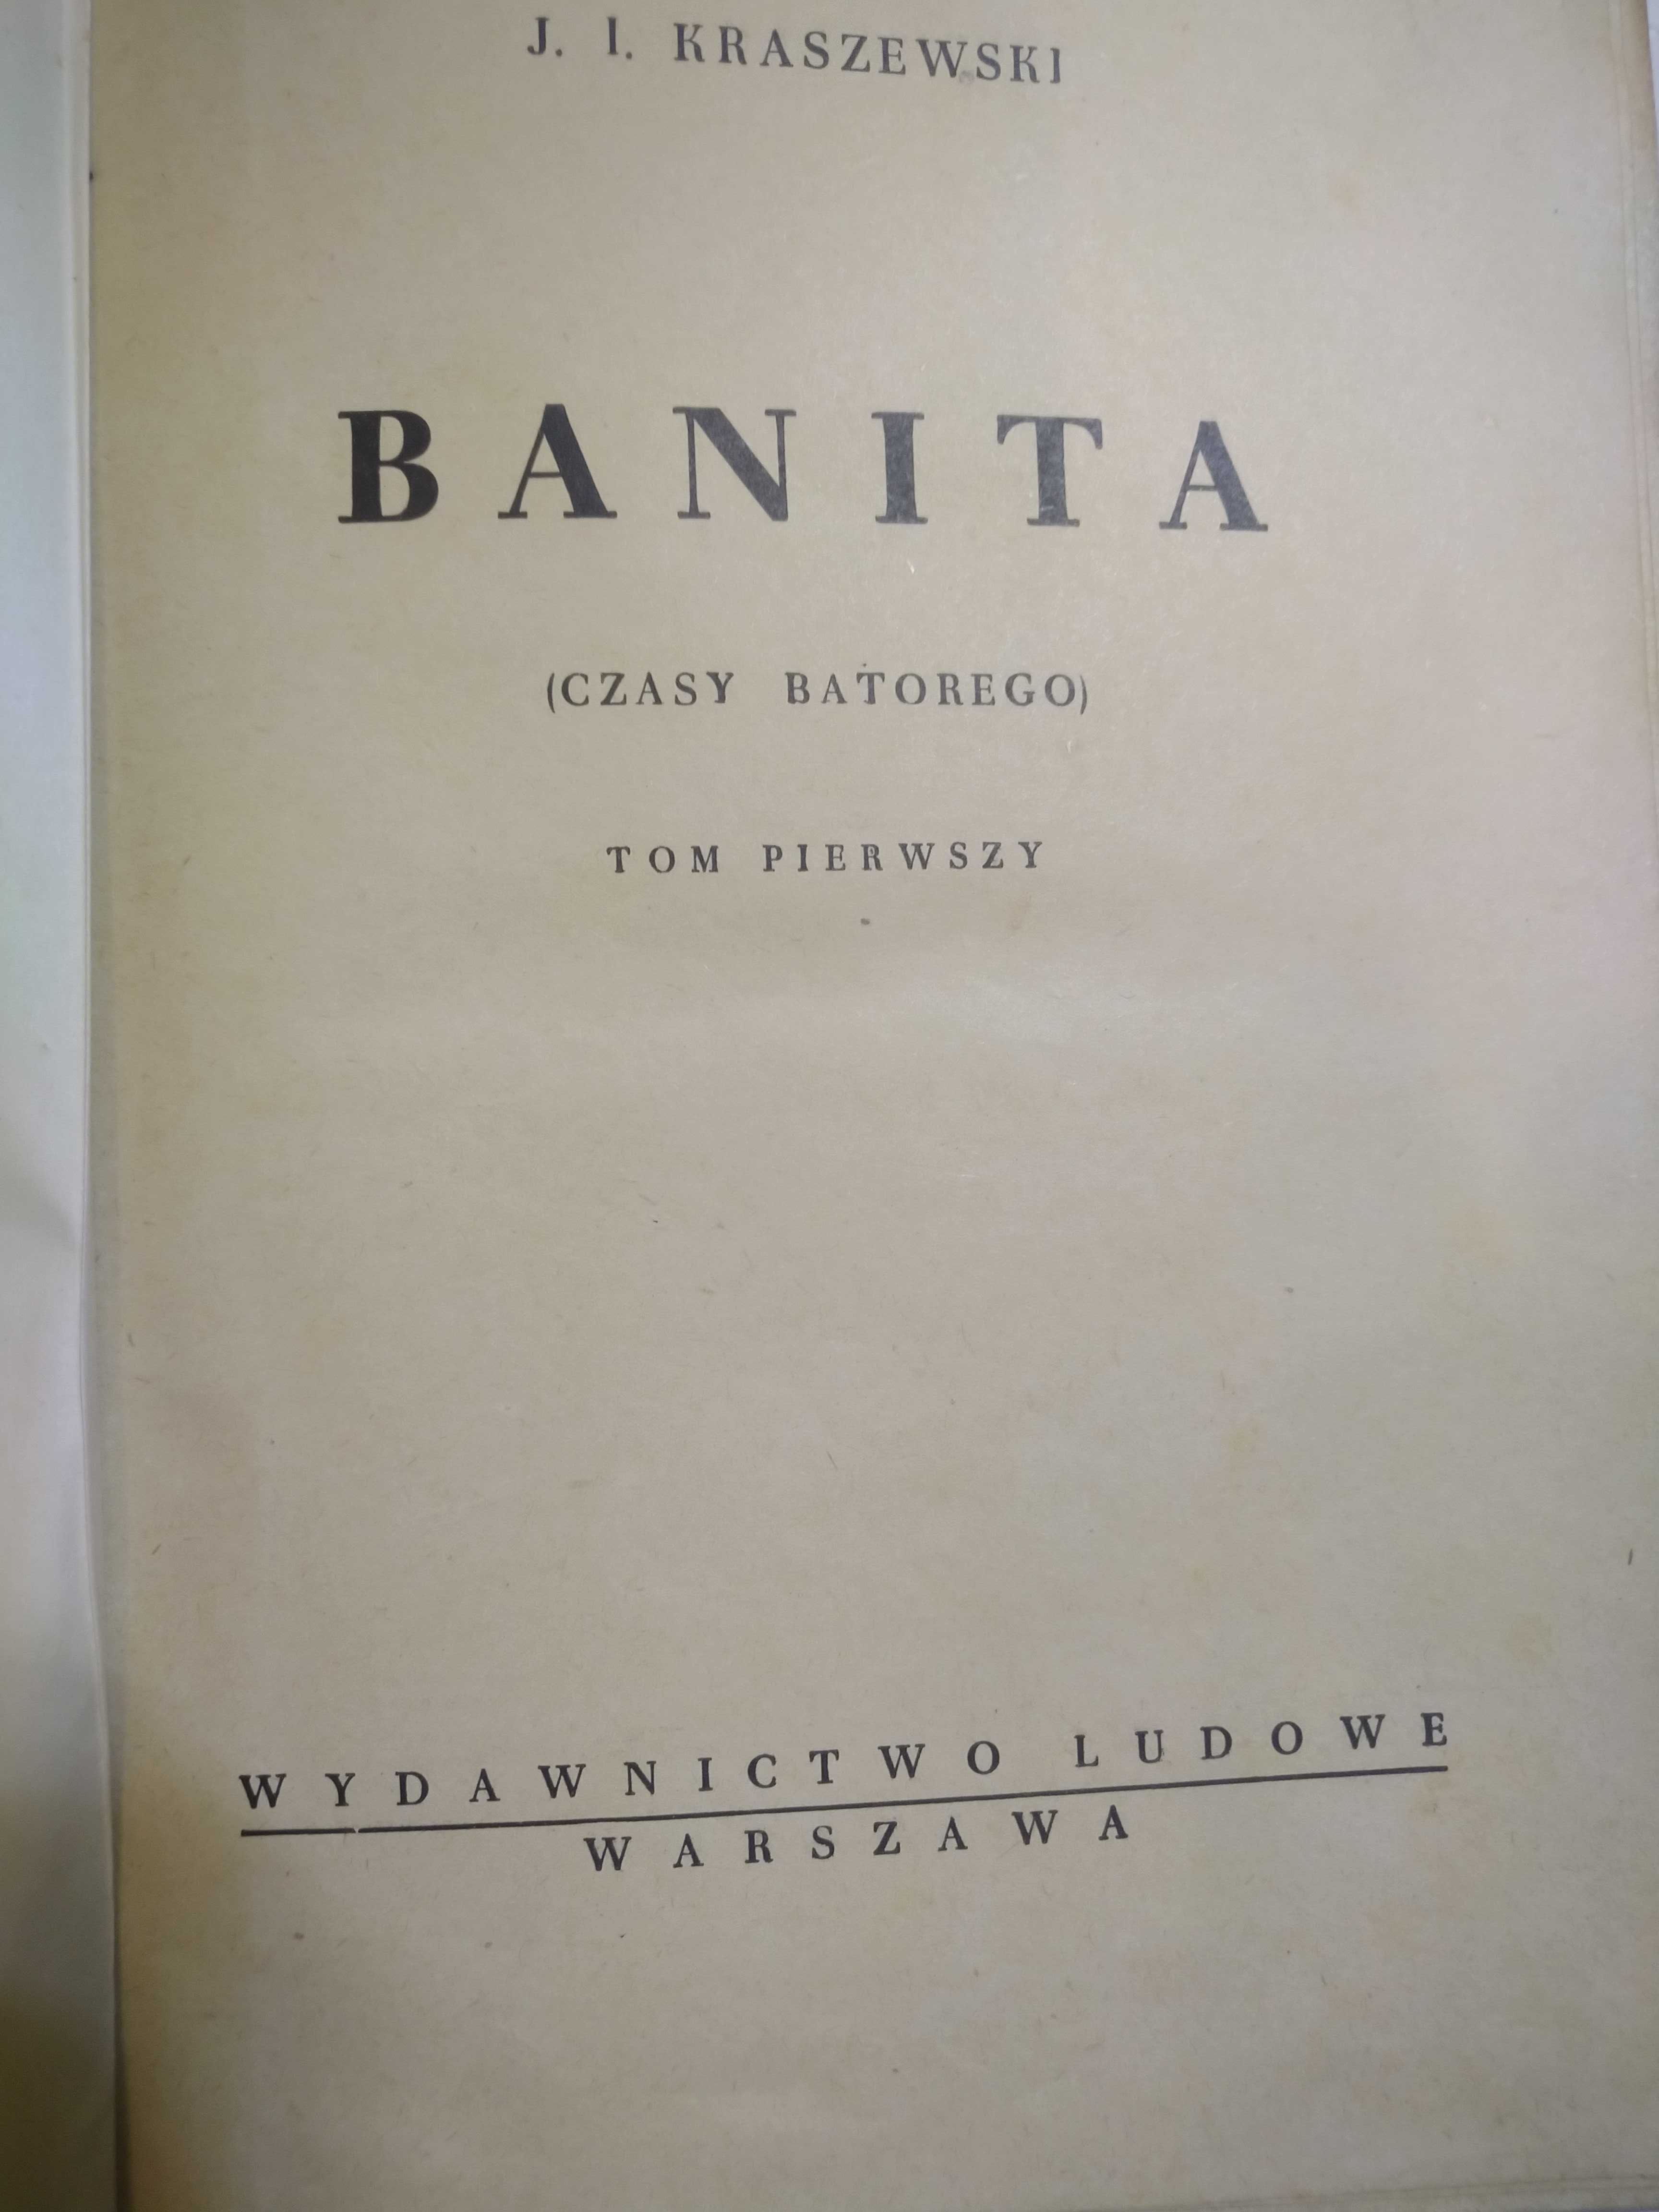 I.J.Kraszewski "Banita" wyd. 1949